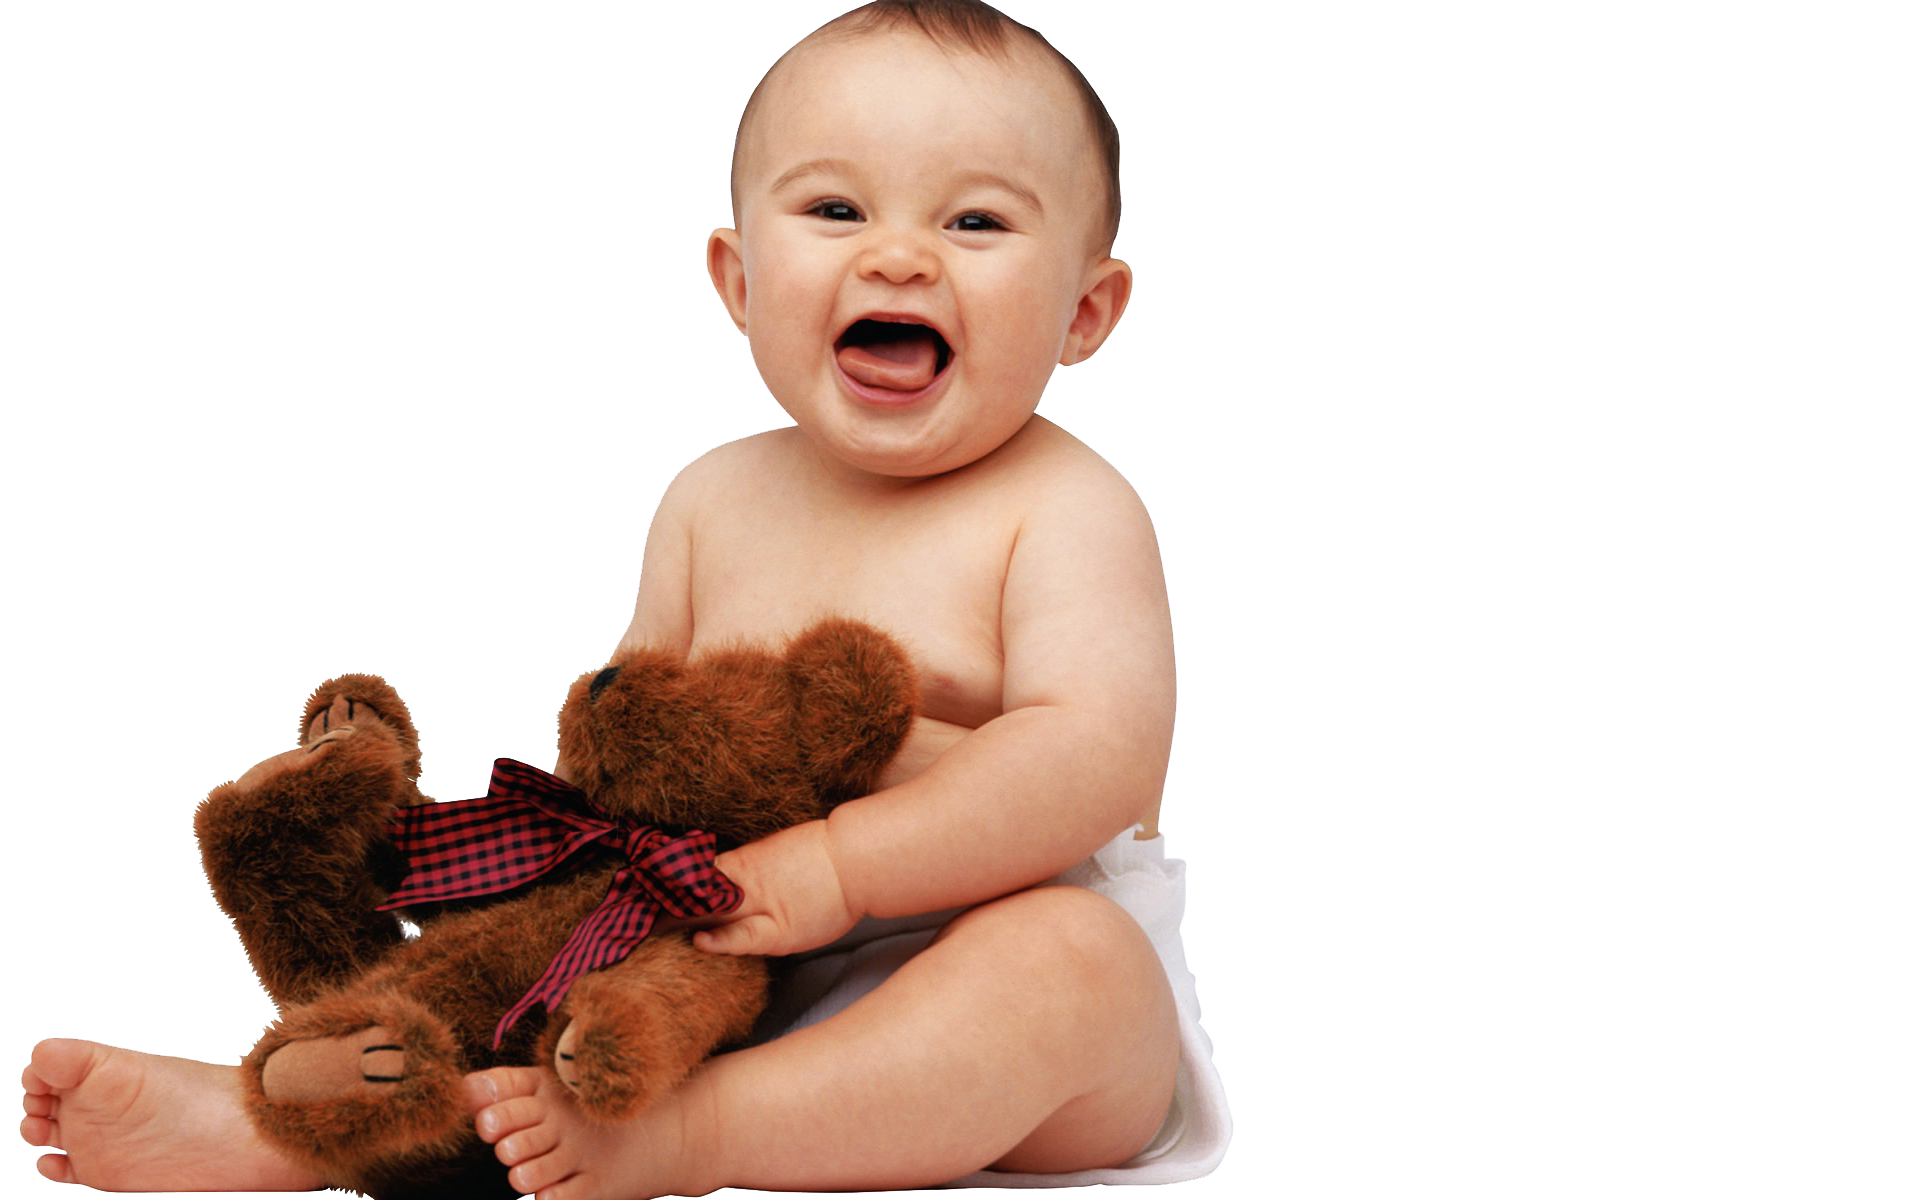 Immagine di PNG del bambino sorridente del bambino